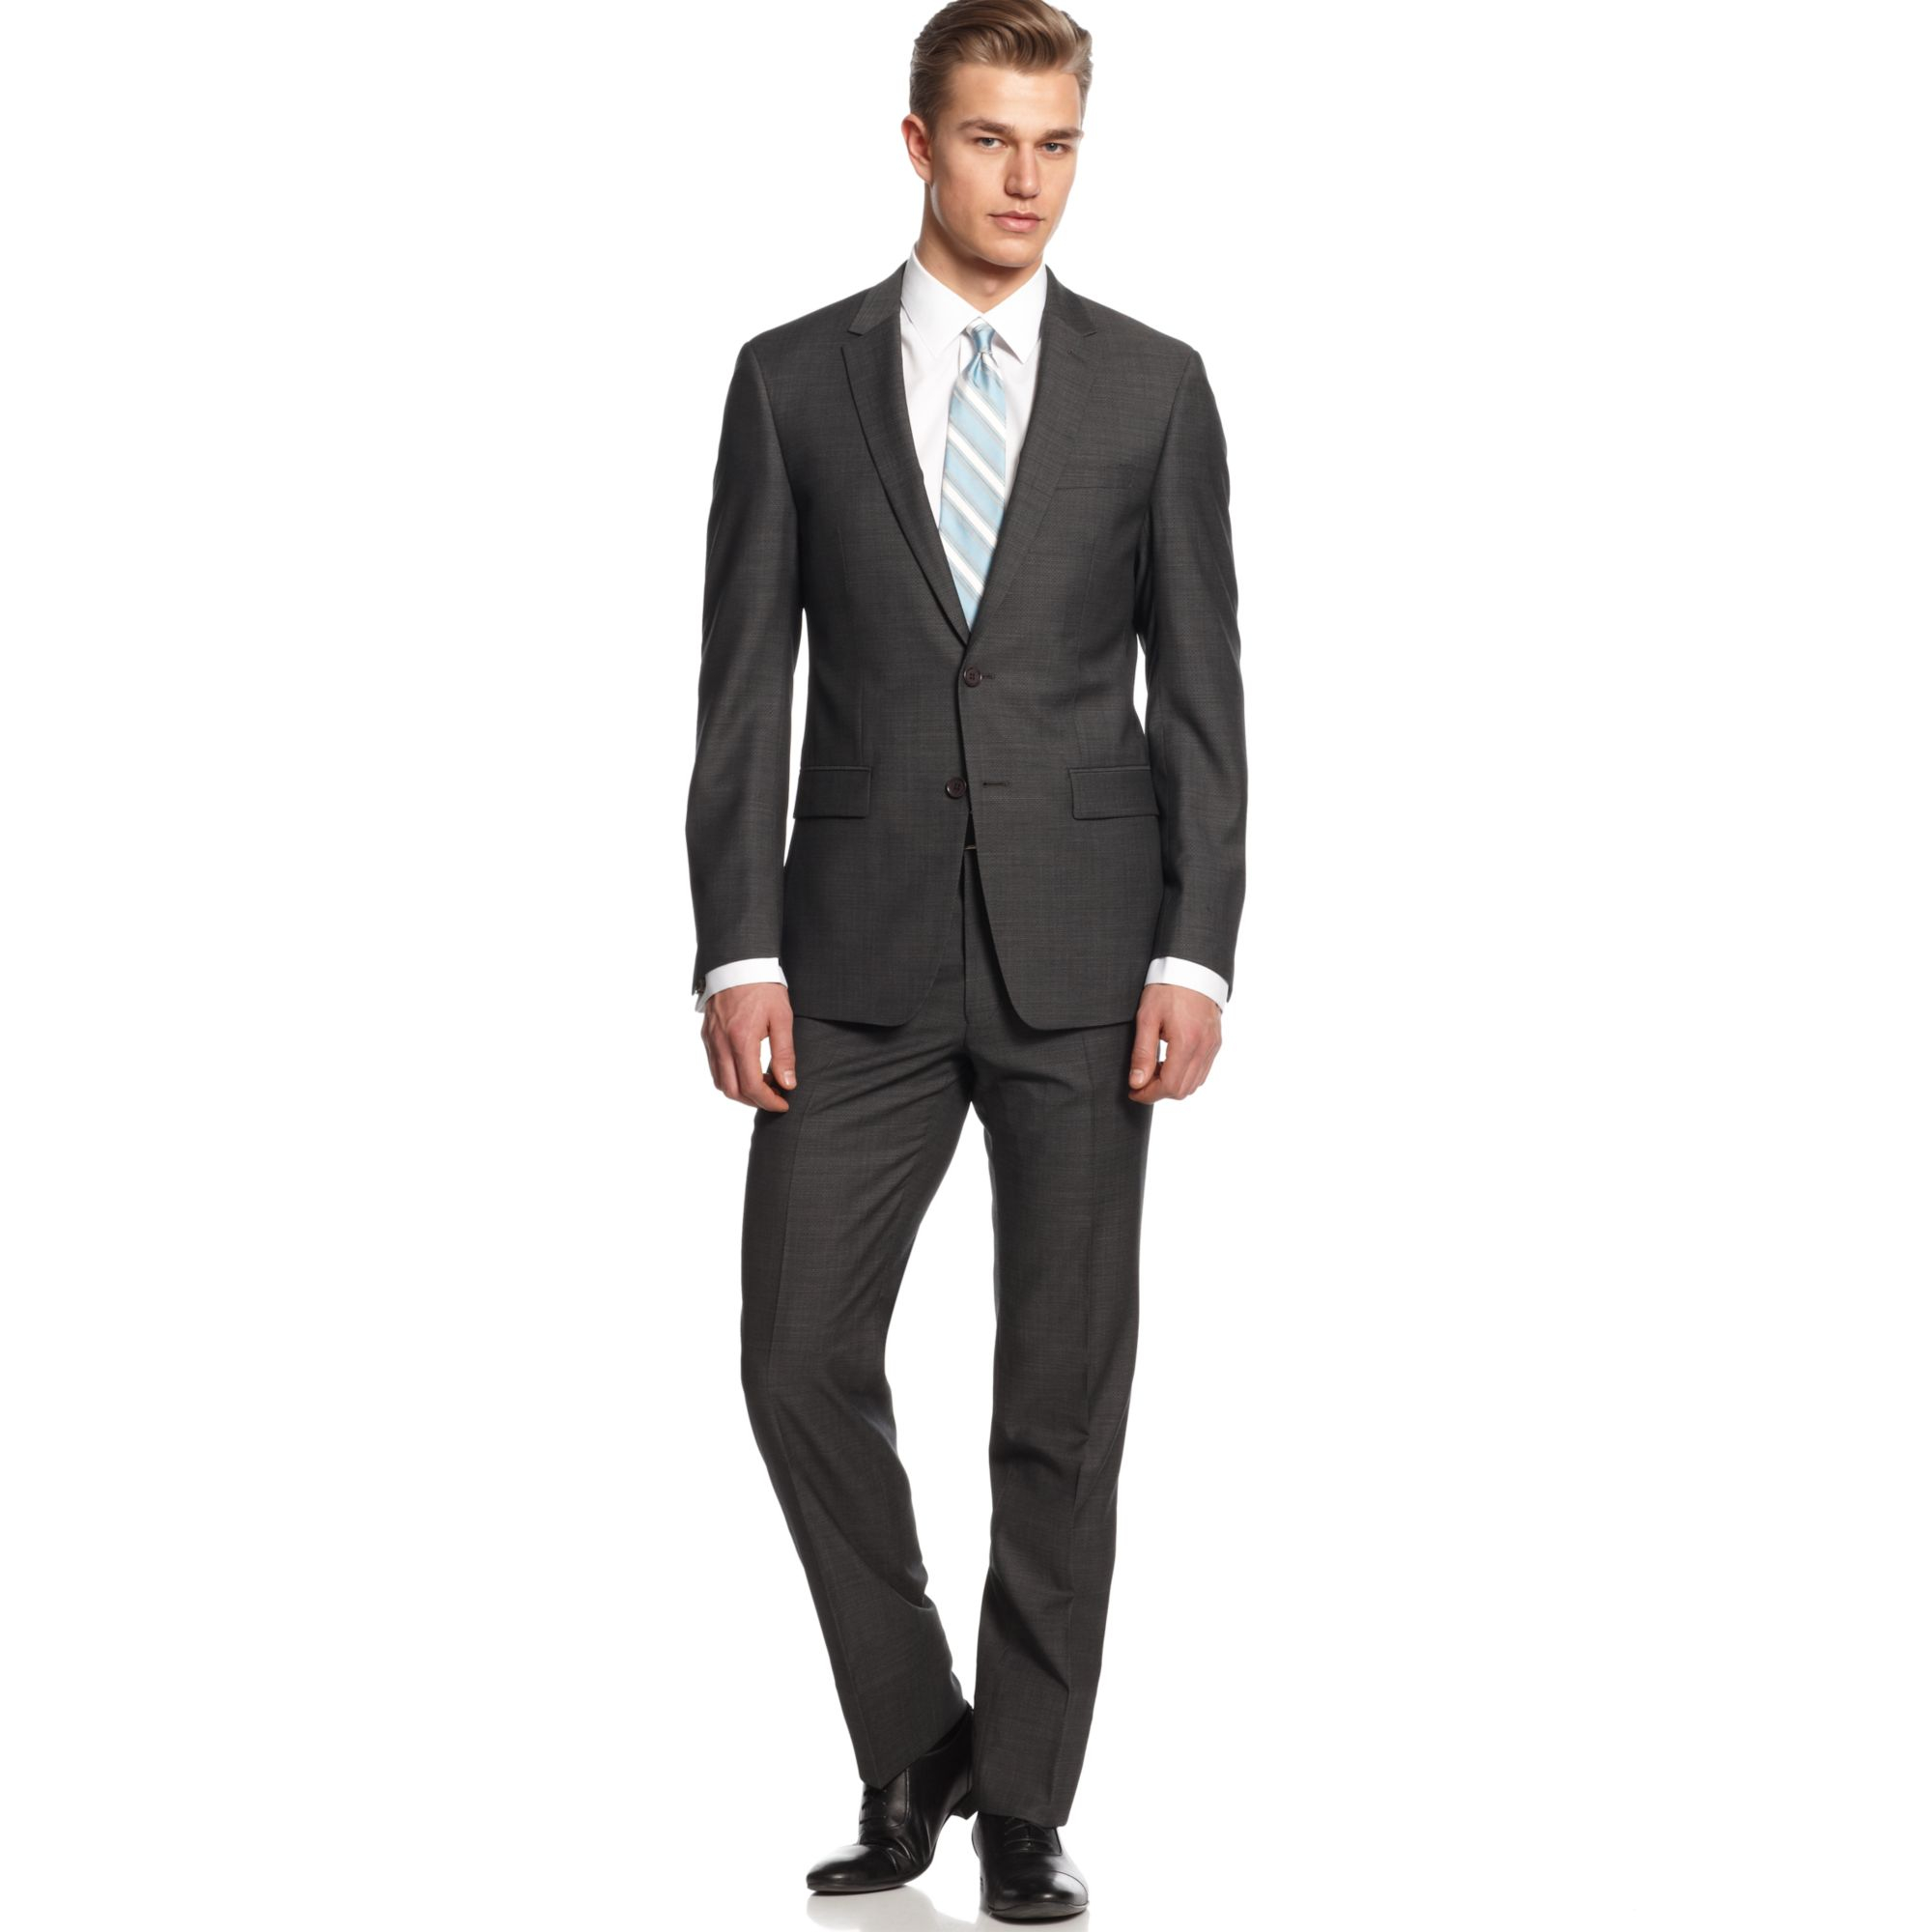 Grey slim fit suits - Slim Fit Suits Shop Men's Skinny Fit Suits